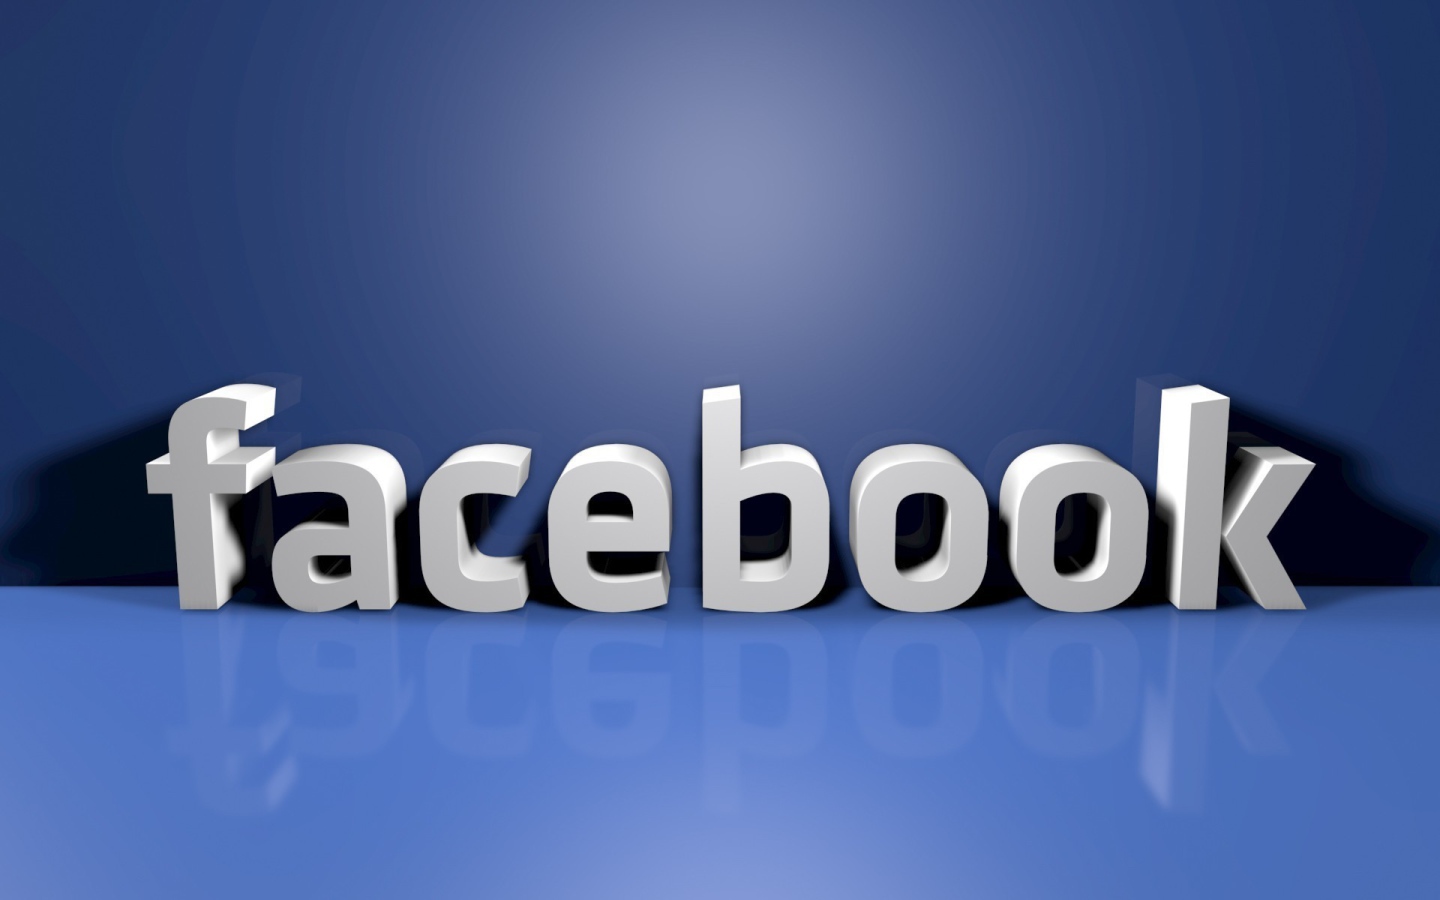 Фэйсбук на голубом фоне